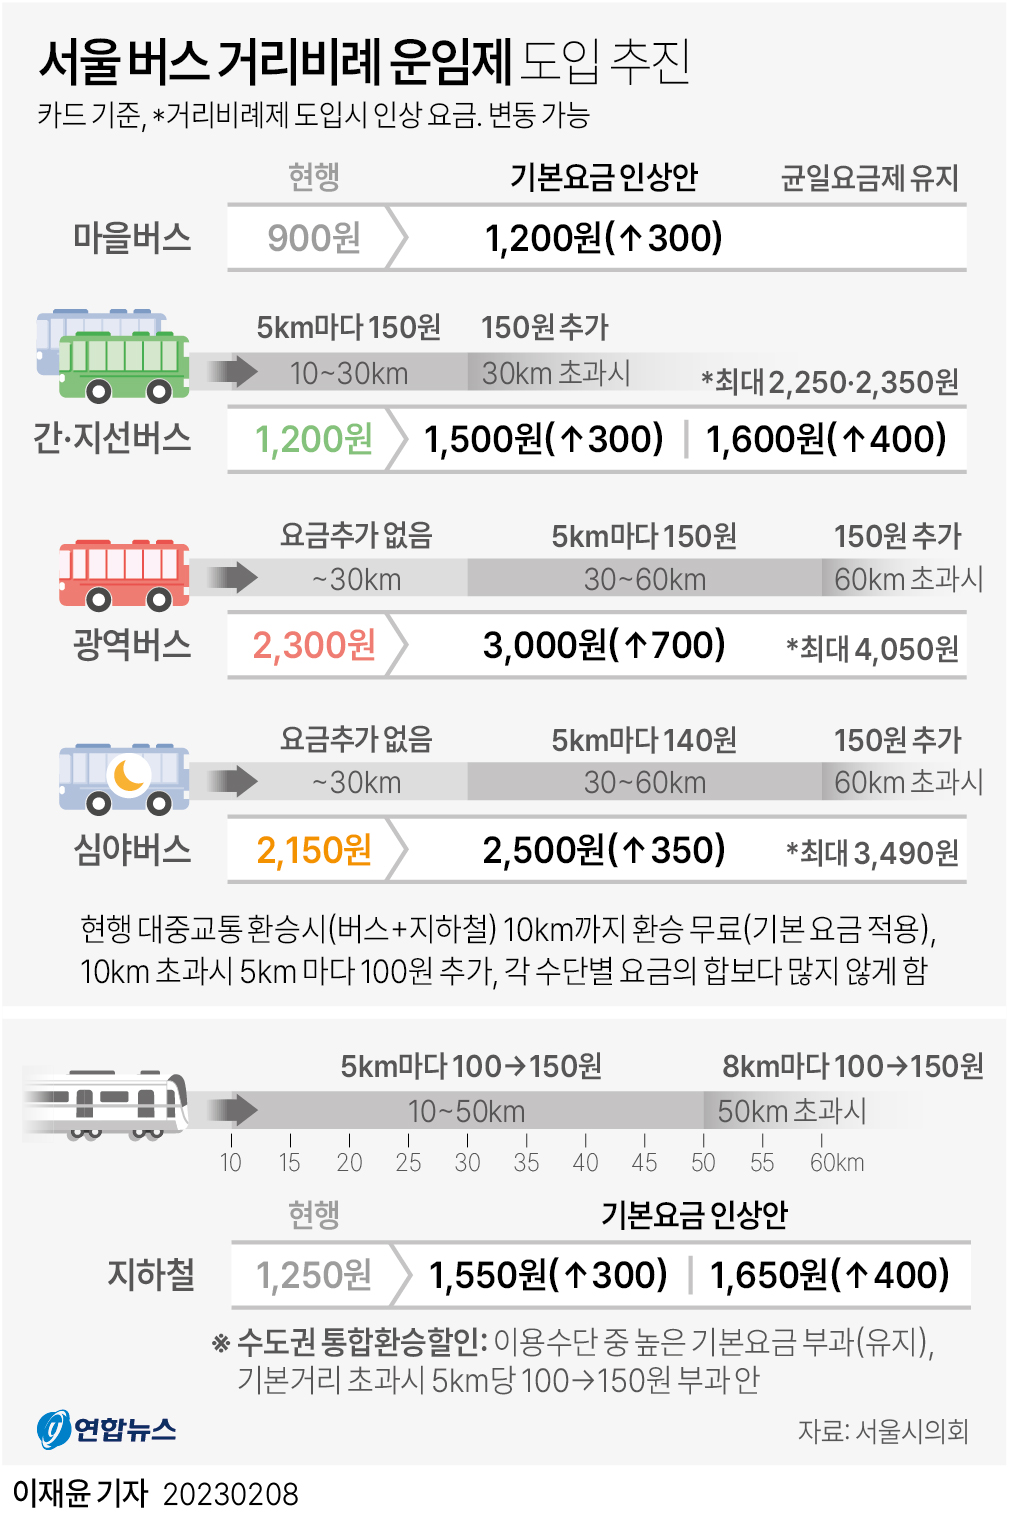 서울 버스 거리비례제 추진 - 탑승거리 10 이상 추가요금